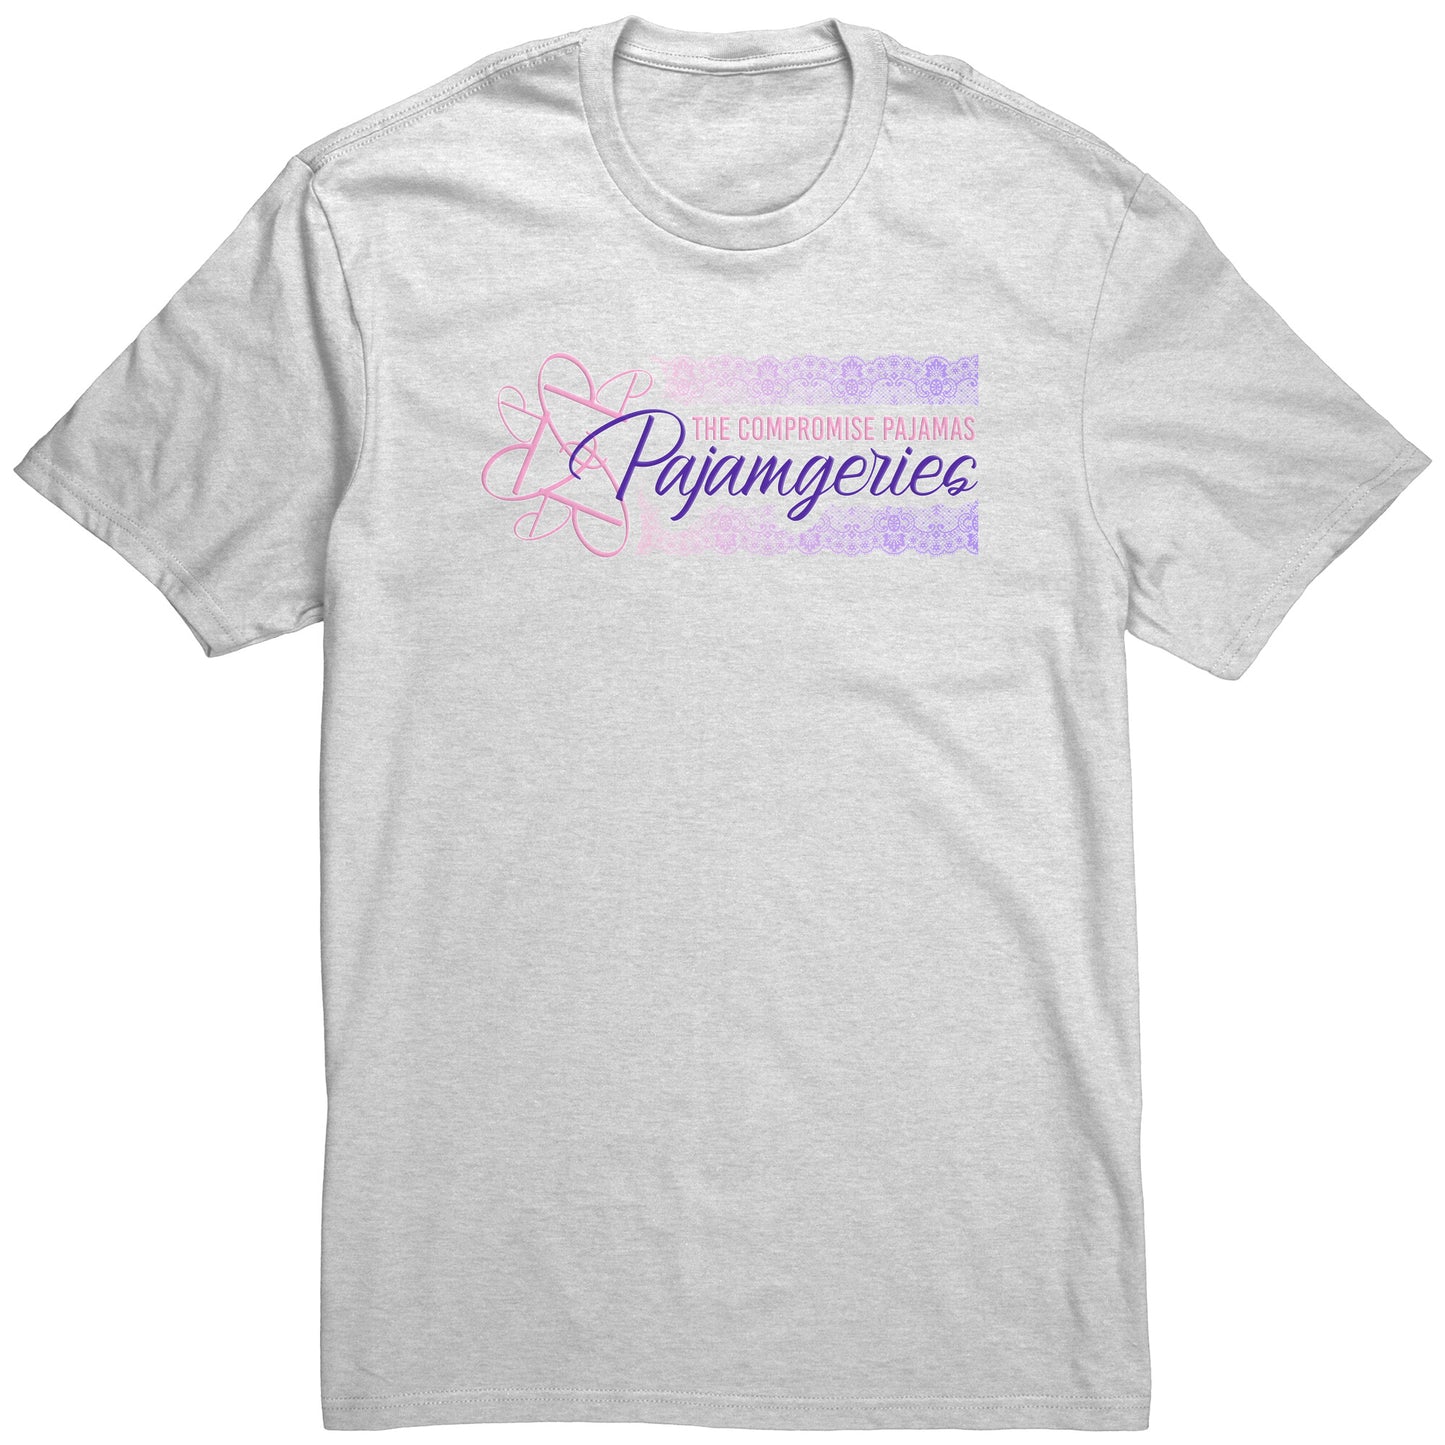 Pajamgeries - The Compromise Pajamas Logo Tee